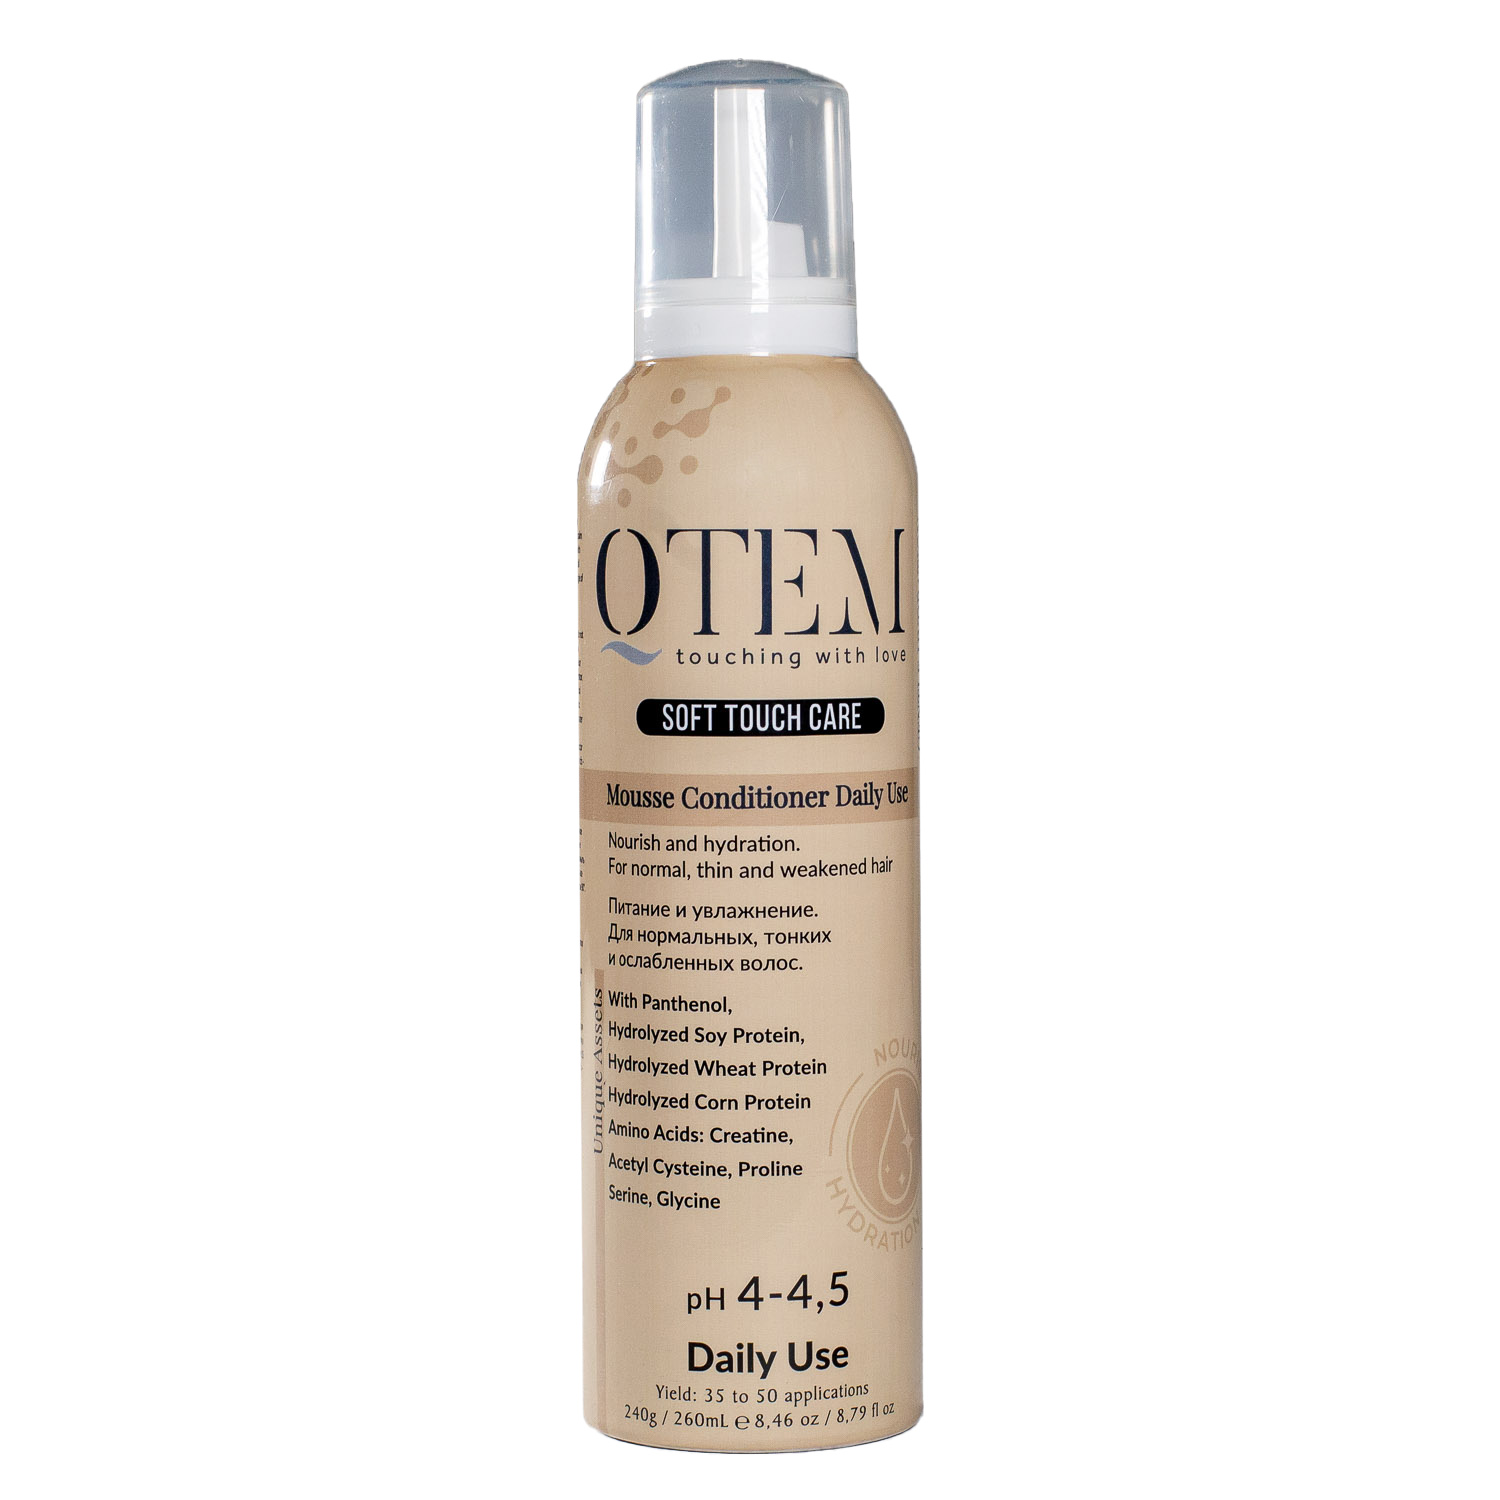 Qtem Протеиновый Мусс-кондиционер для частого применения Питание и увлажнение нормальных, тонких и ослабленных волос, 260 мл (Qtem, Soft Touch Care)